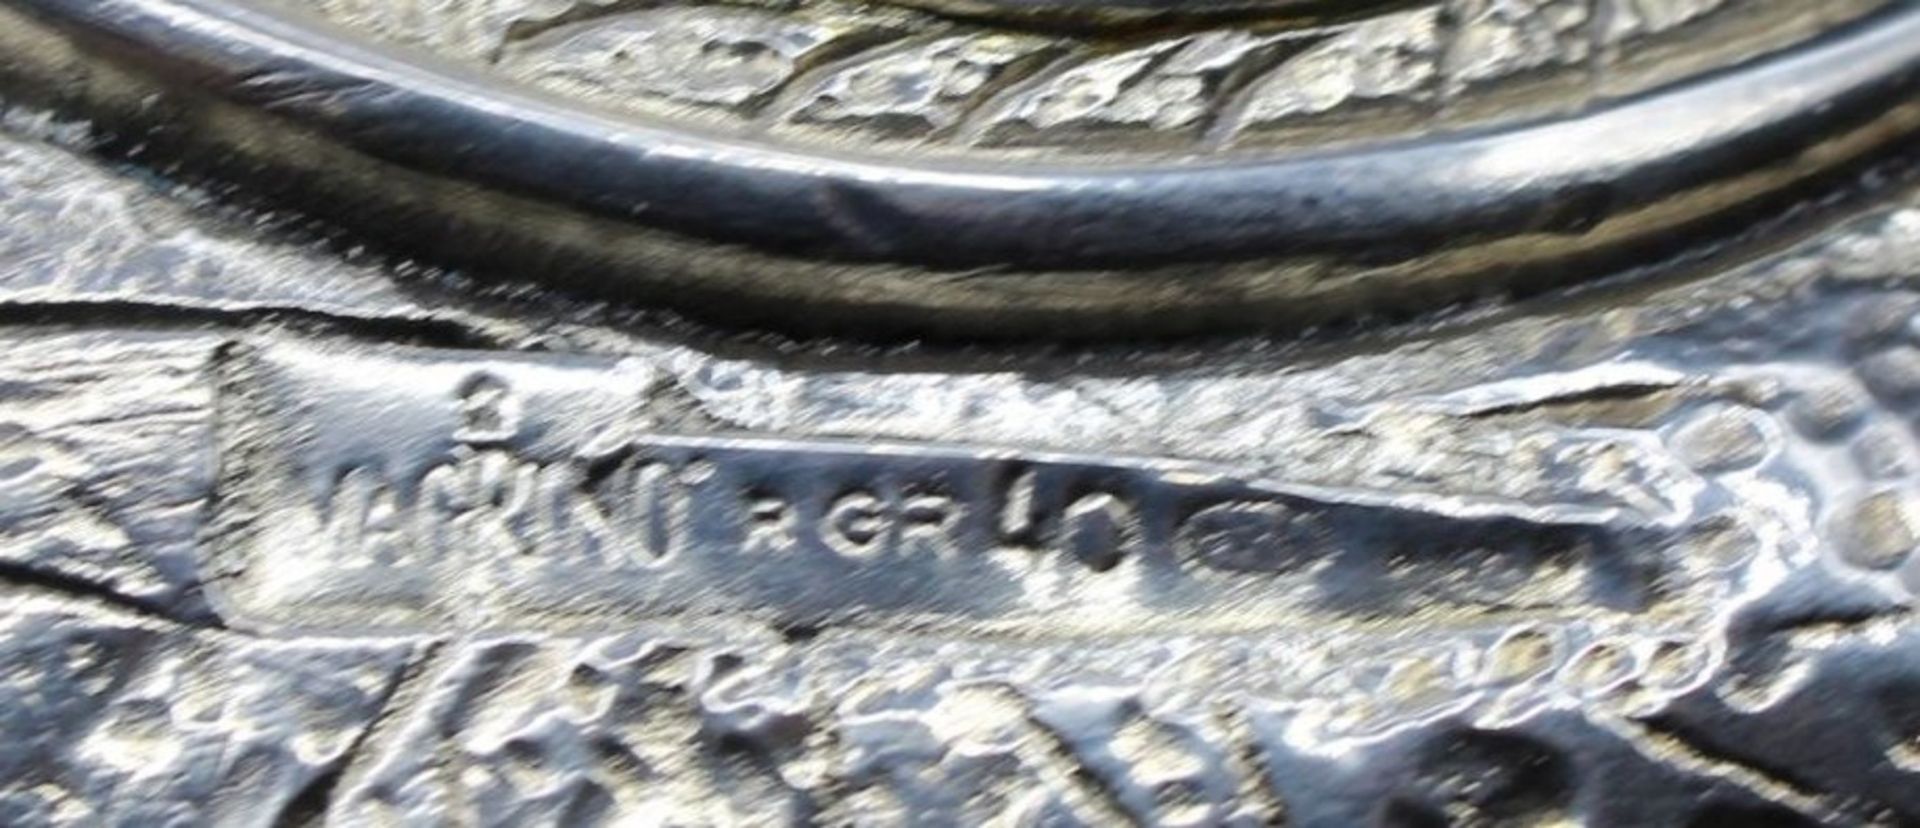 Tischdekoration, Füllhorn, gemarkt "Magrino" Italien, Silber -925- gefüllt, L-18cm. - Bild 4 aus 4